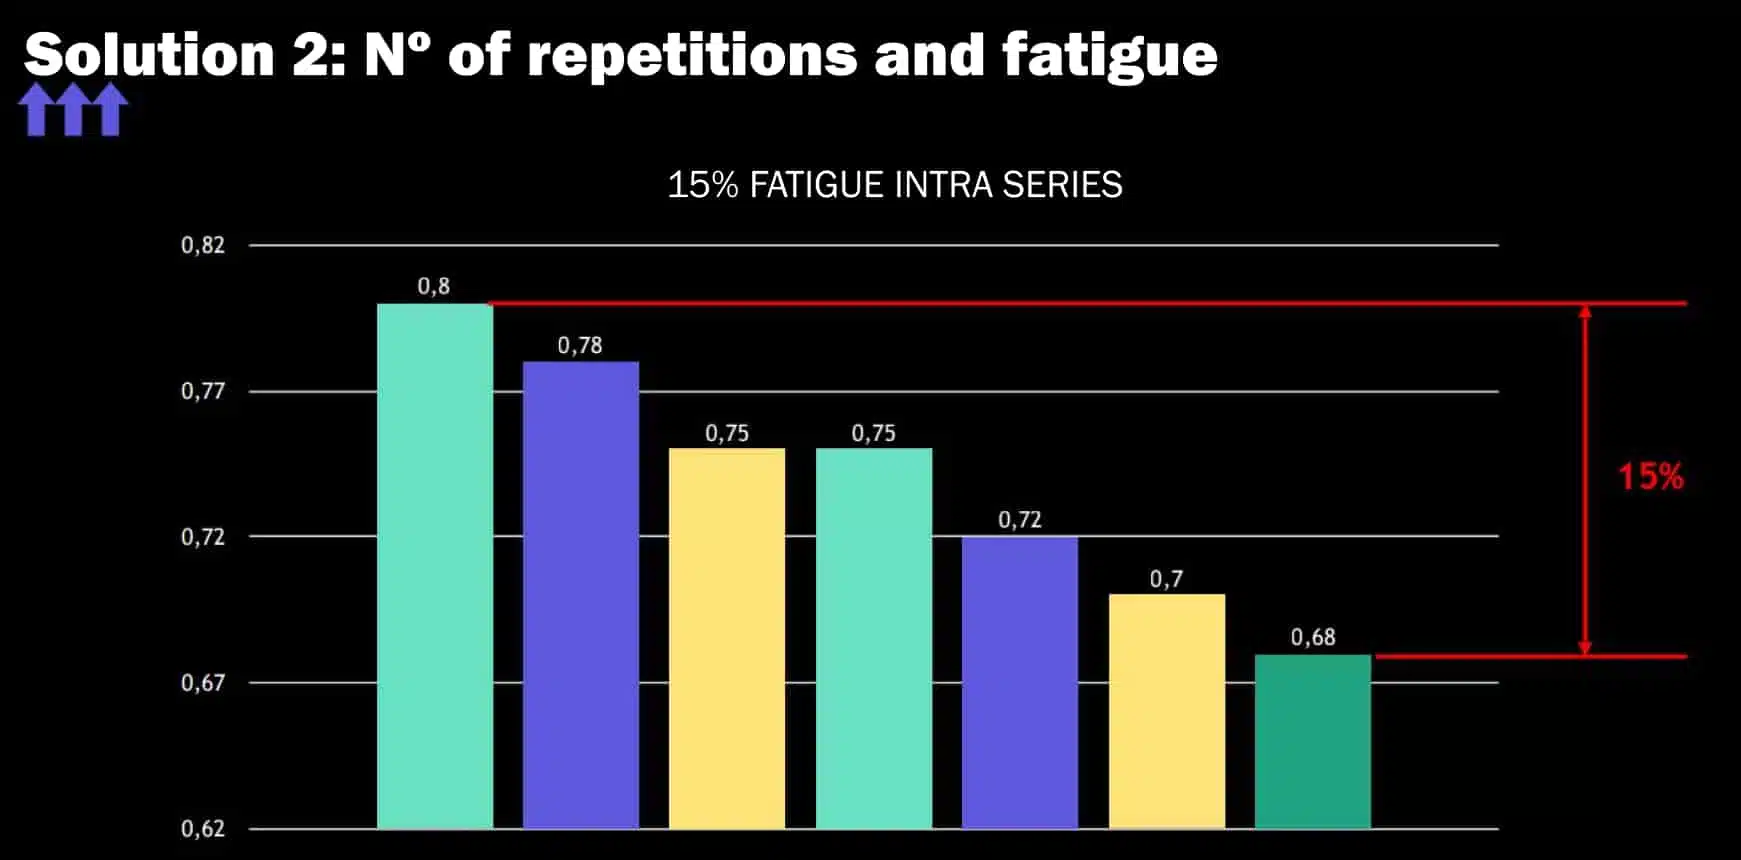 fatigue between series